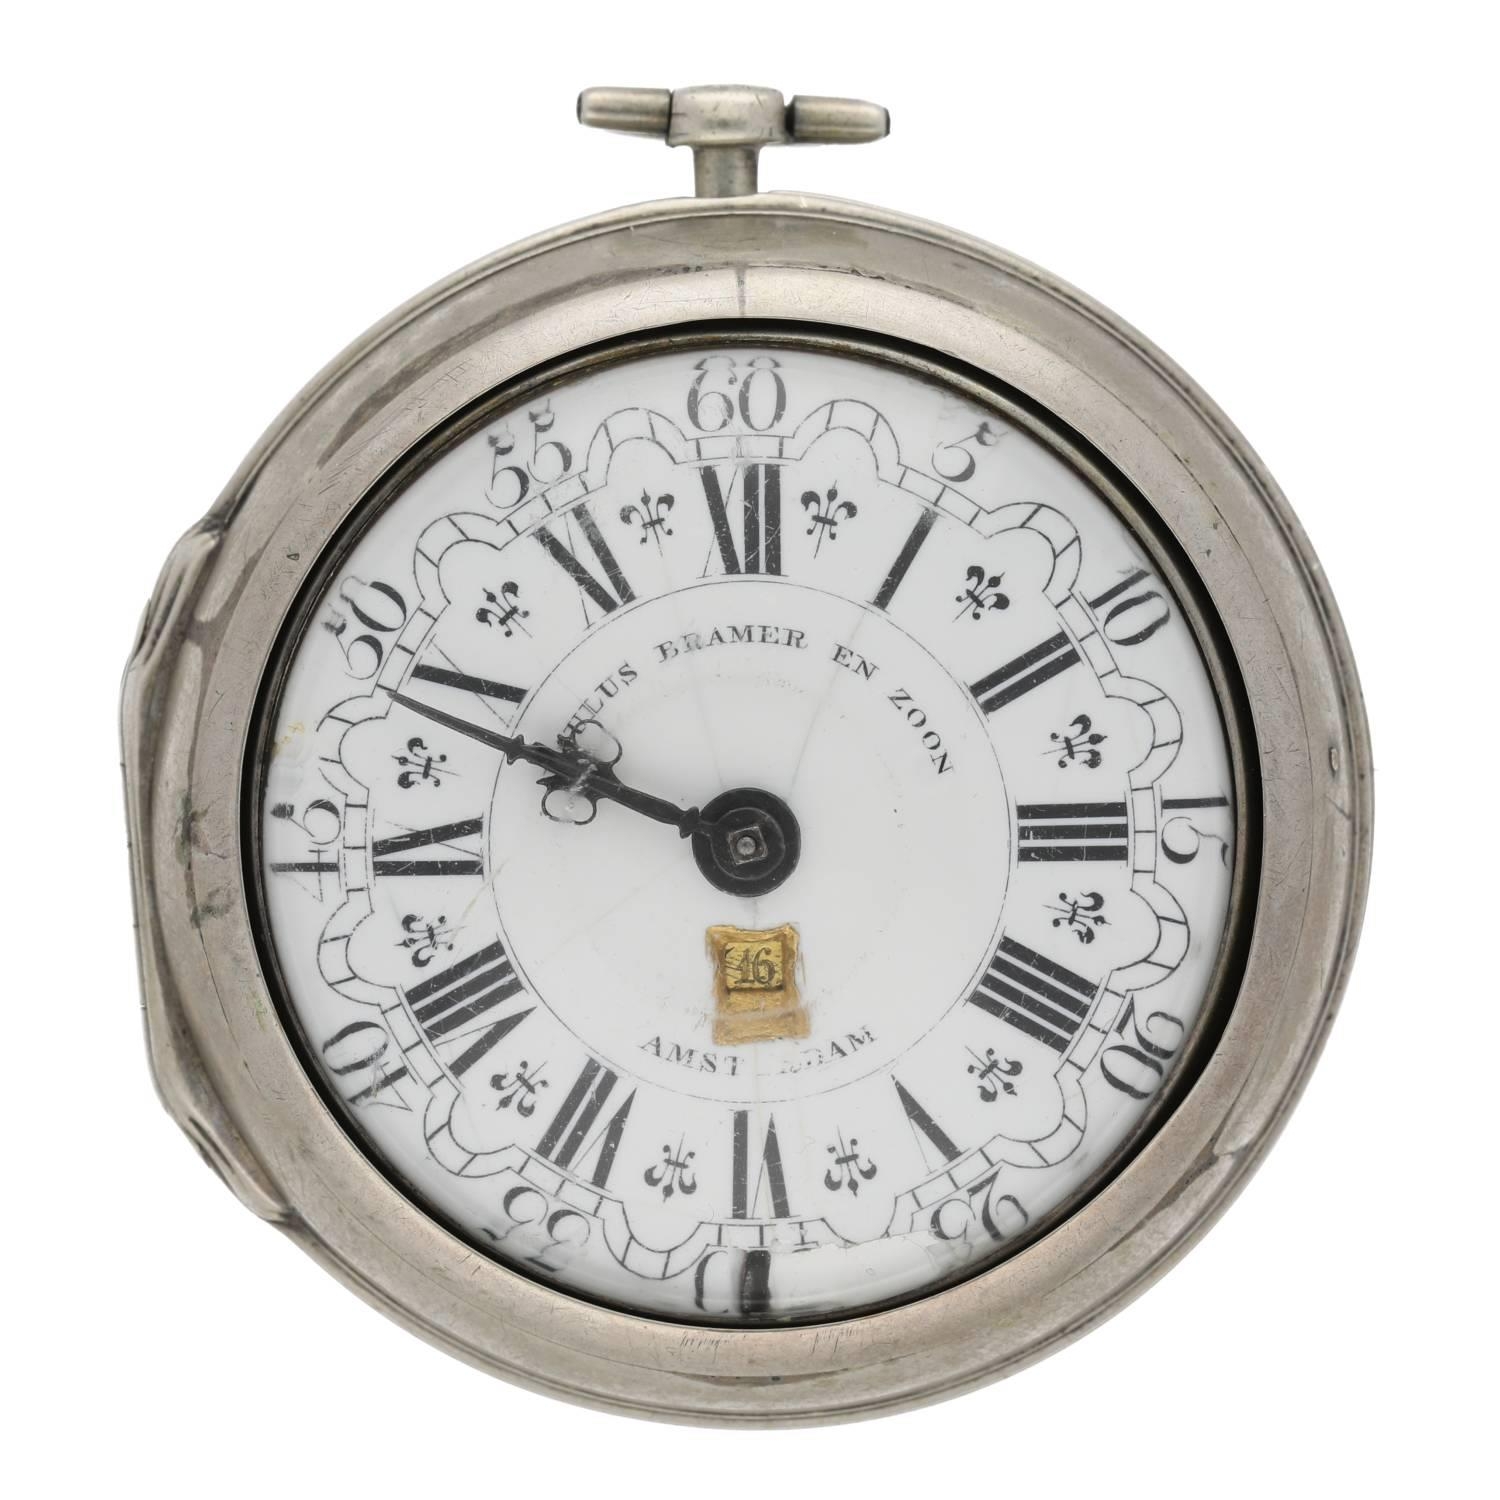 Paulus Bramer En Zoom, Amsterdam - Dutch 18th century silver pair cased verge calendar pocket watch, - Image 2 of 10